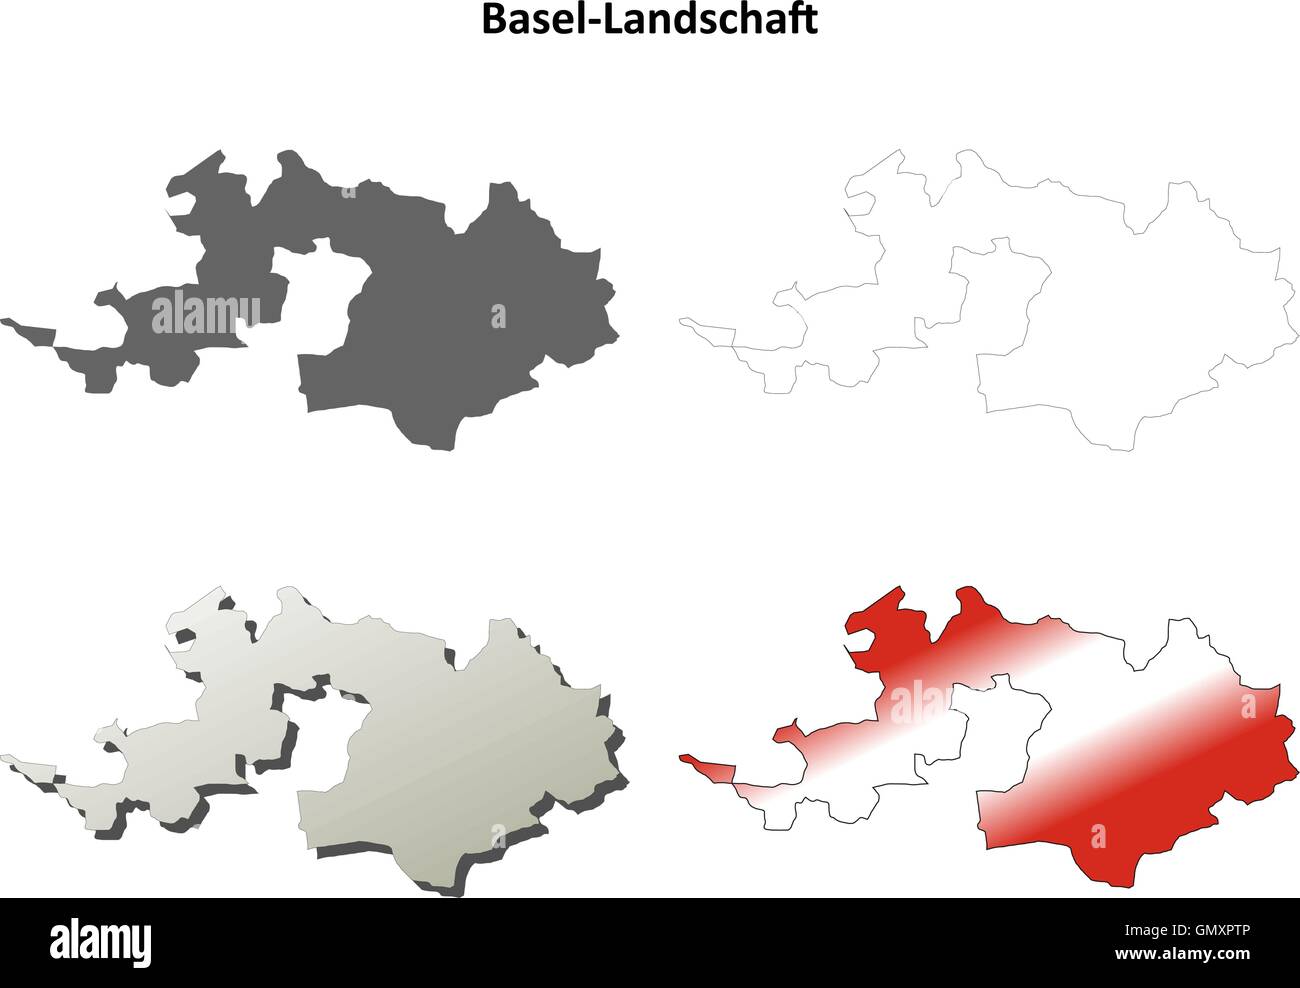 Basel-Landschaft blank detailed outline map set Stock Vector